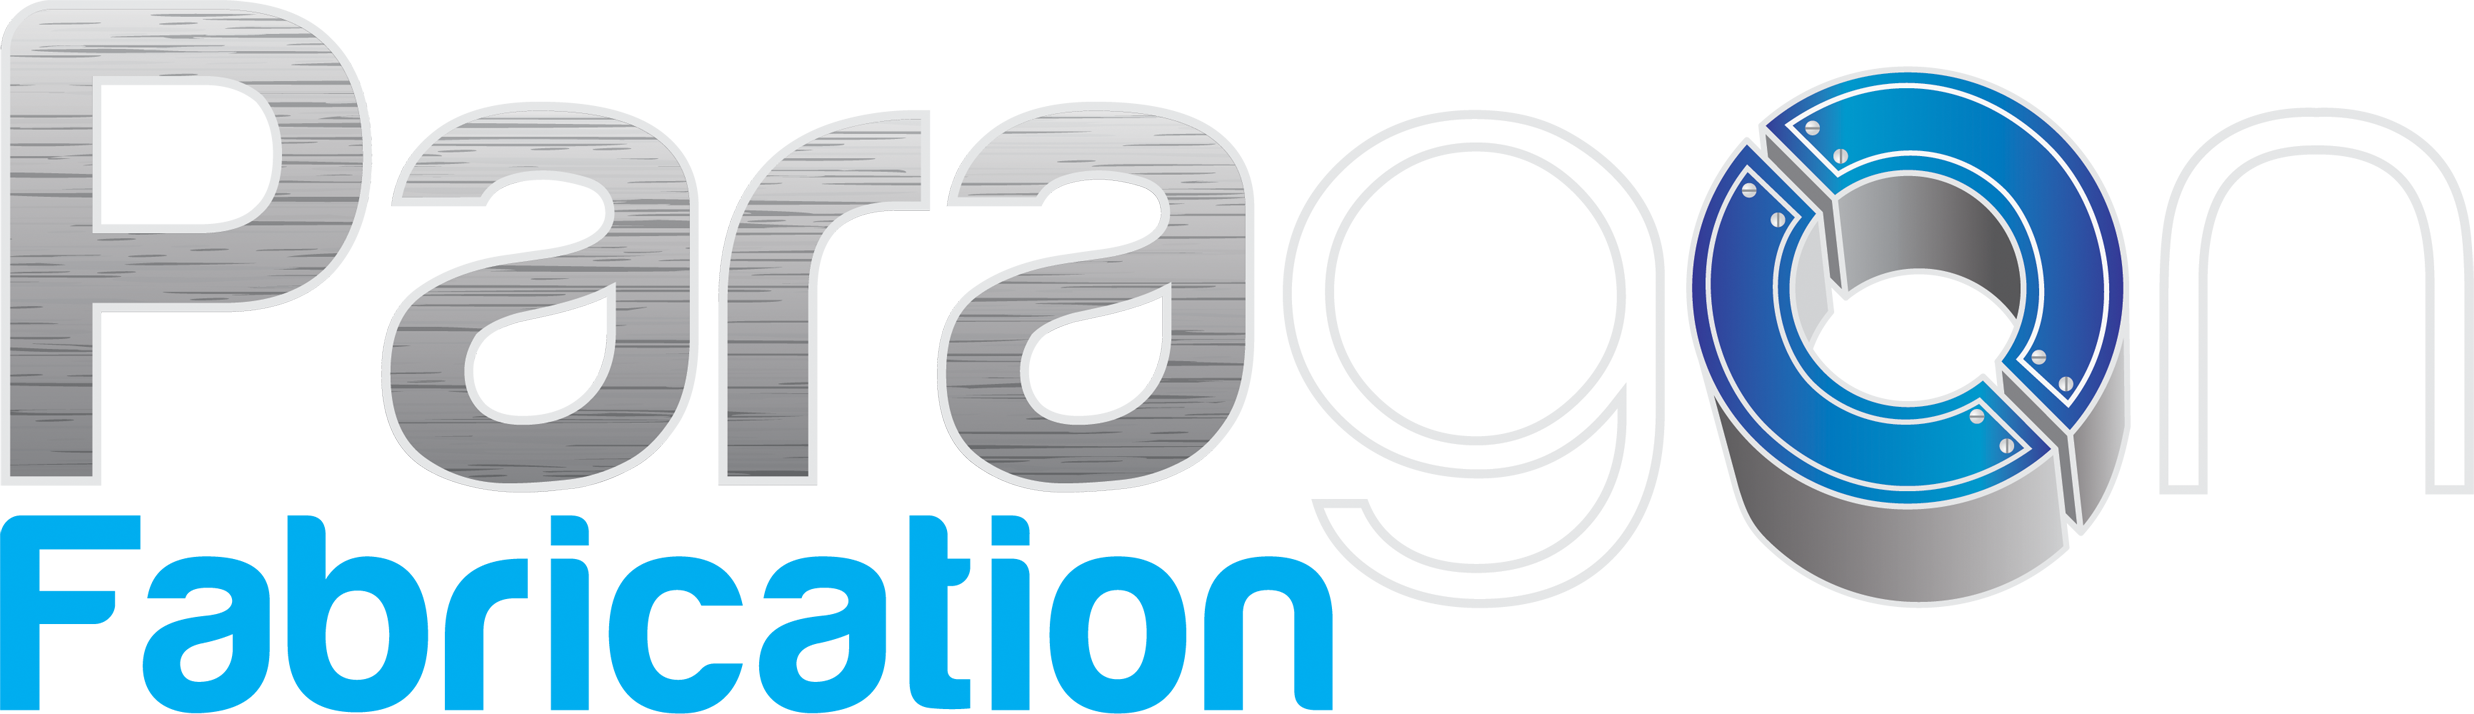 Paragon 360 Logo